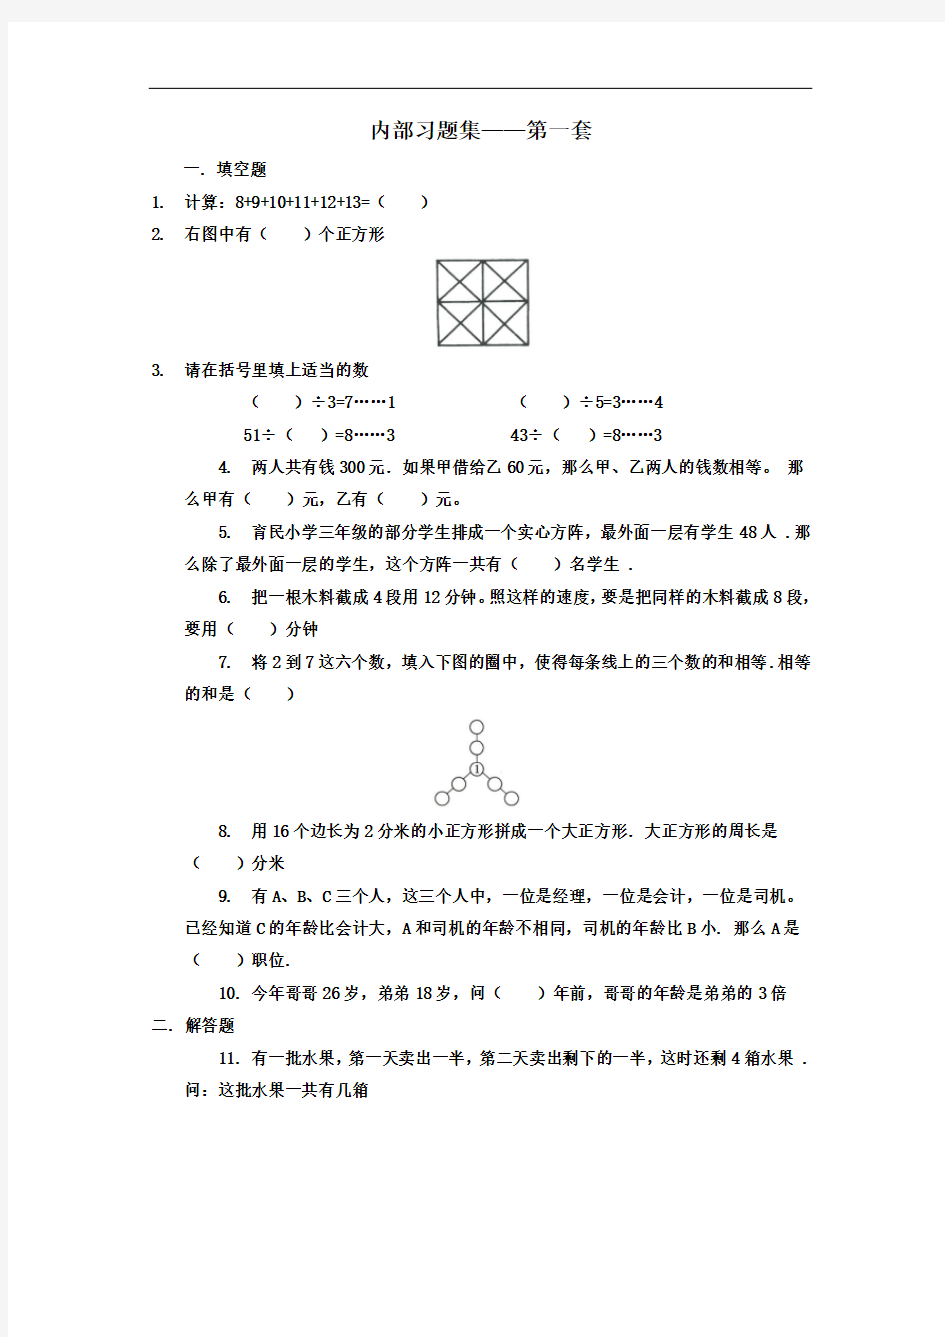 【数学】学而思网校内部奥数习题集.低年级(第1-4套)